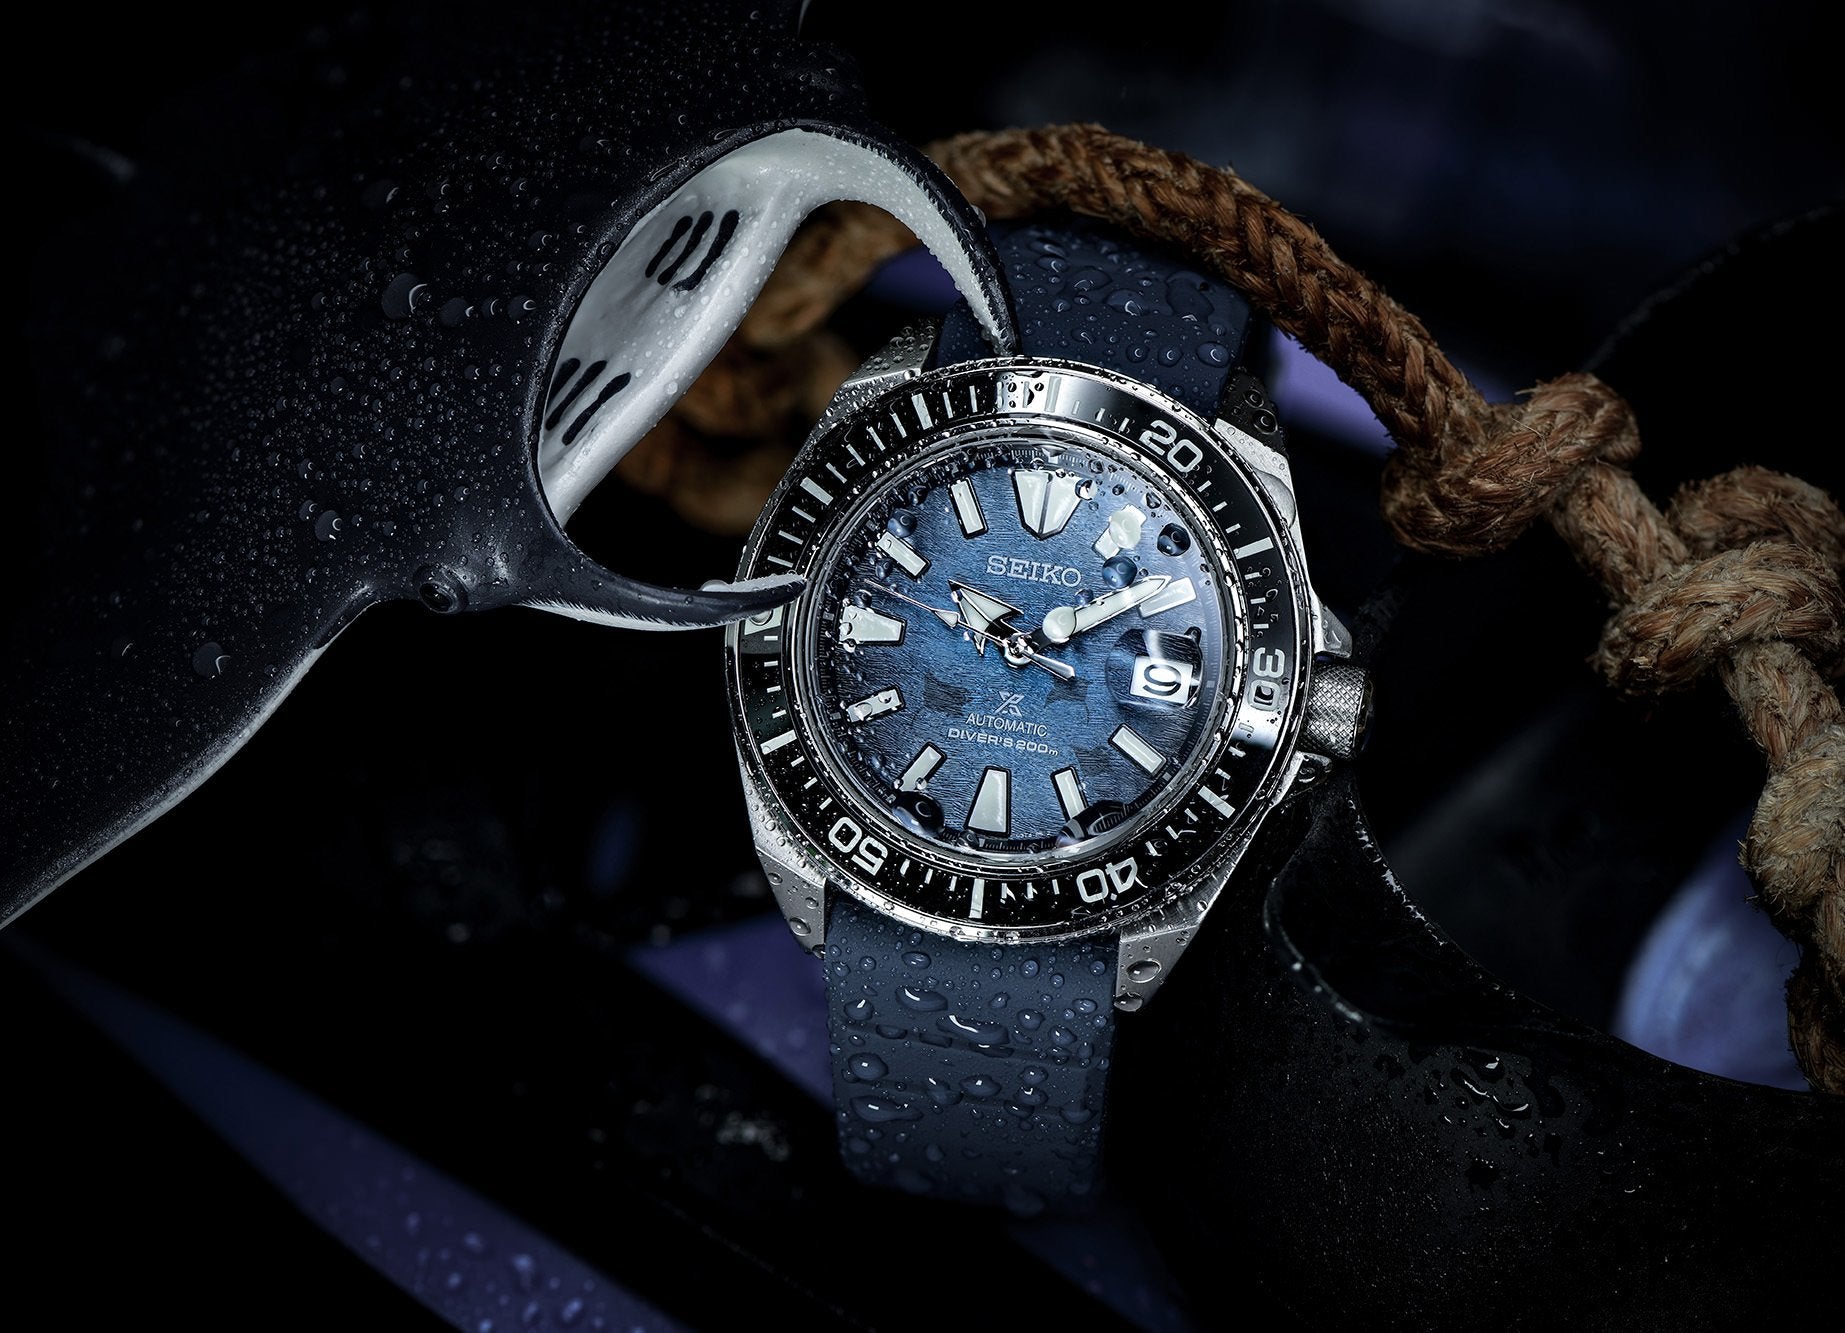 Seiko SE Save the Ocean Dark Manta Ray King Samurai Diver's Men's Rubber Strap Watch SRPF79K1 - Prestige